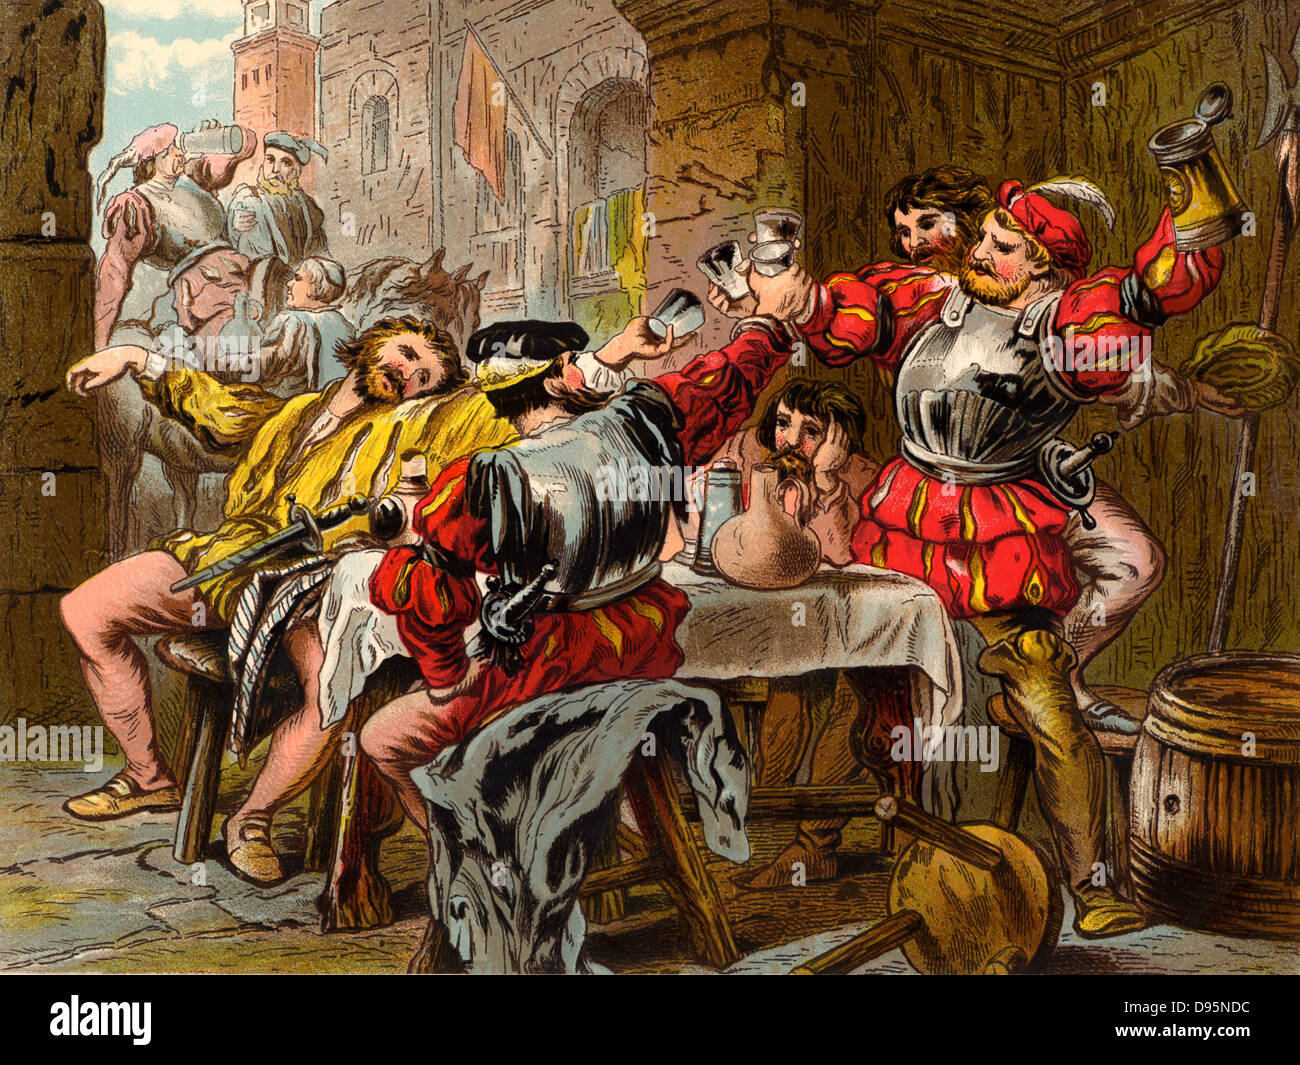 Lassen Sie mich die Canakin Clink': 'Othello' Act II. Szene II. Jago, Cassio und Montano trinken in der Halle des Schlosses. Illustration von Robert Dudley (Aktive 1858-1893) veröffentlicht 1856-1858 für die Tragödie "Othello, der Mohr von Venedig" von William Shakespeare, zwischen 1602 und 1604 geschrieben. Chromolithograph. Stockfoto